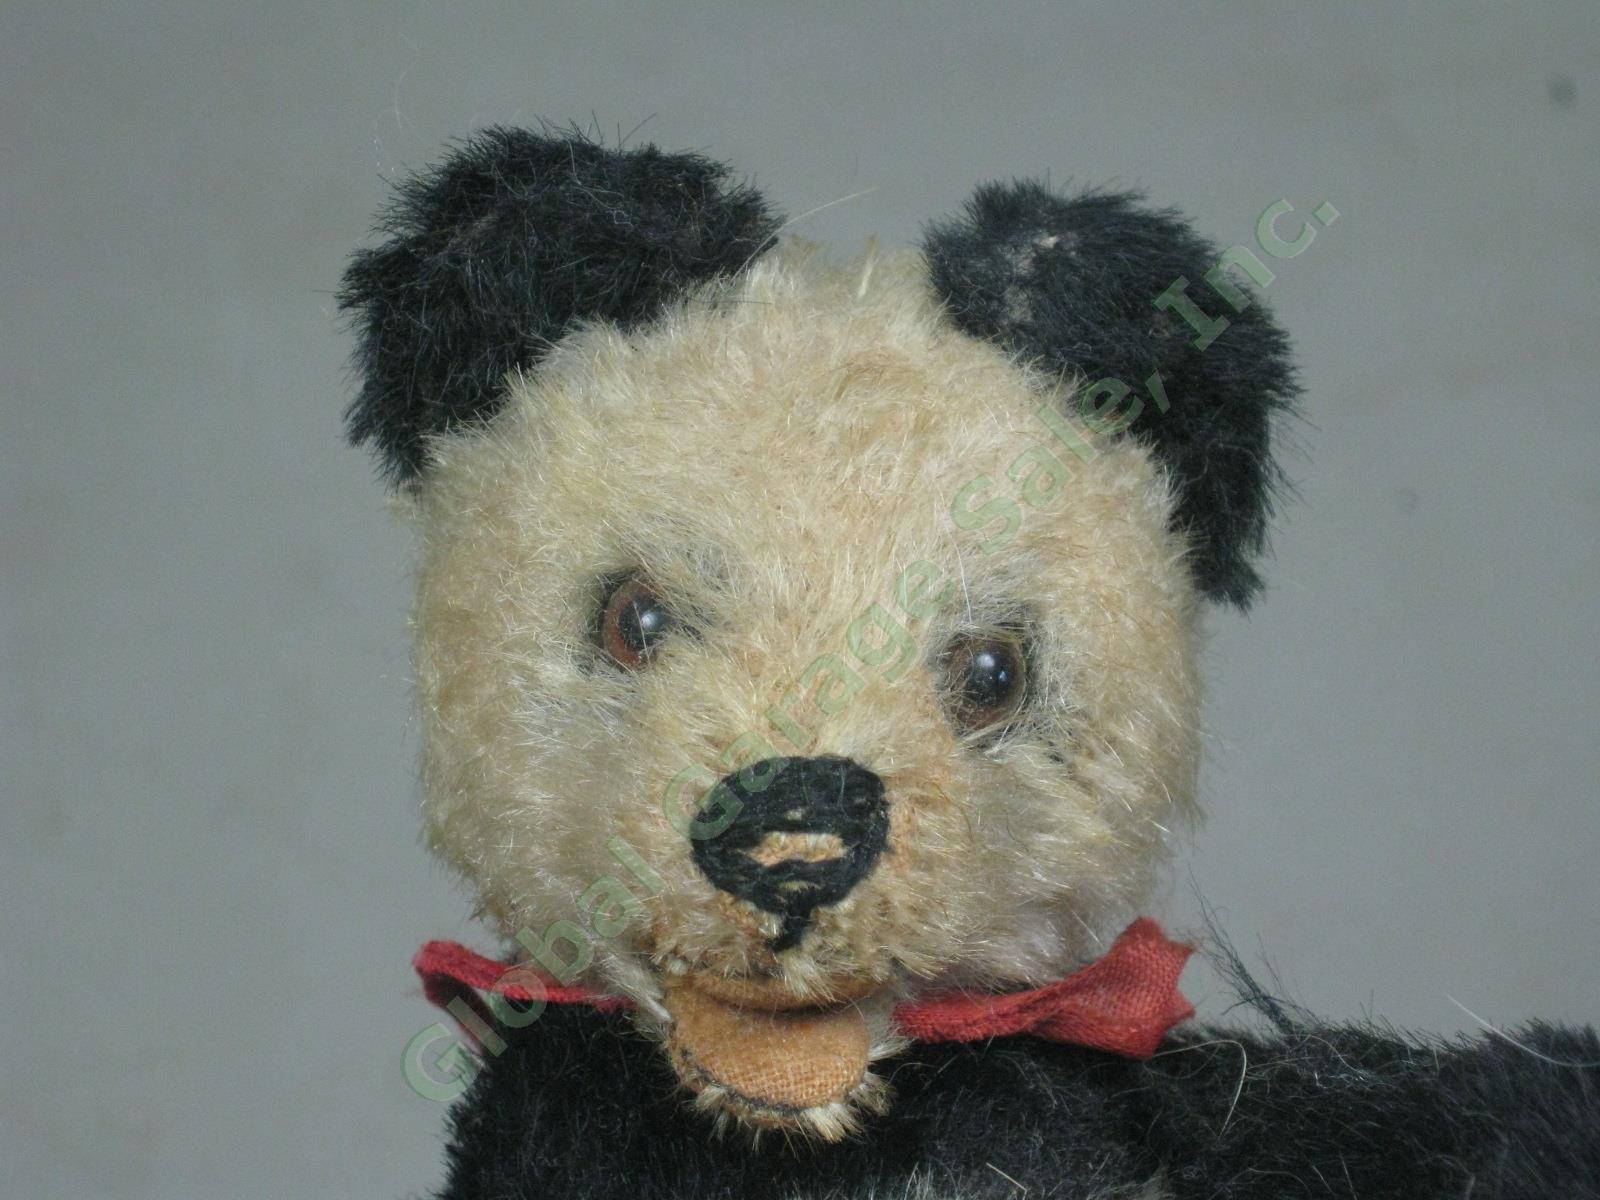 5" Vtg Antique Steiff Fully Jointed Open Mouth Mohair Panda Bear Stuffed Animal 1